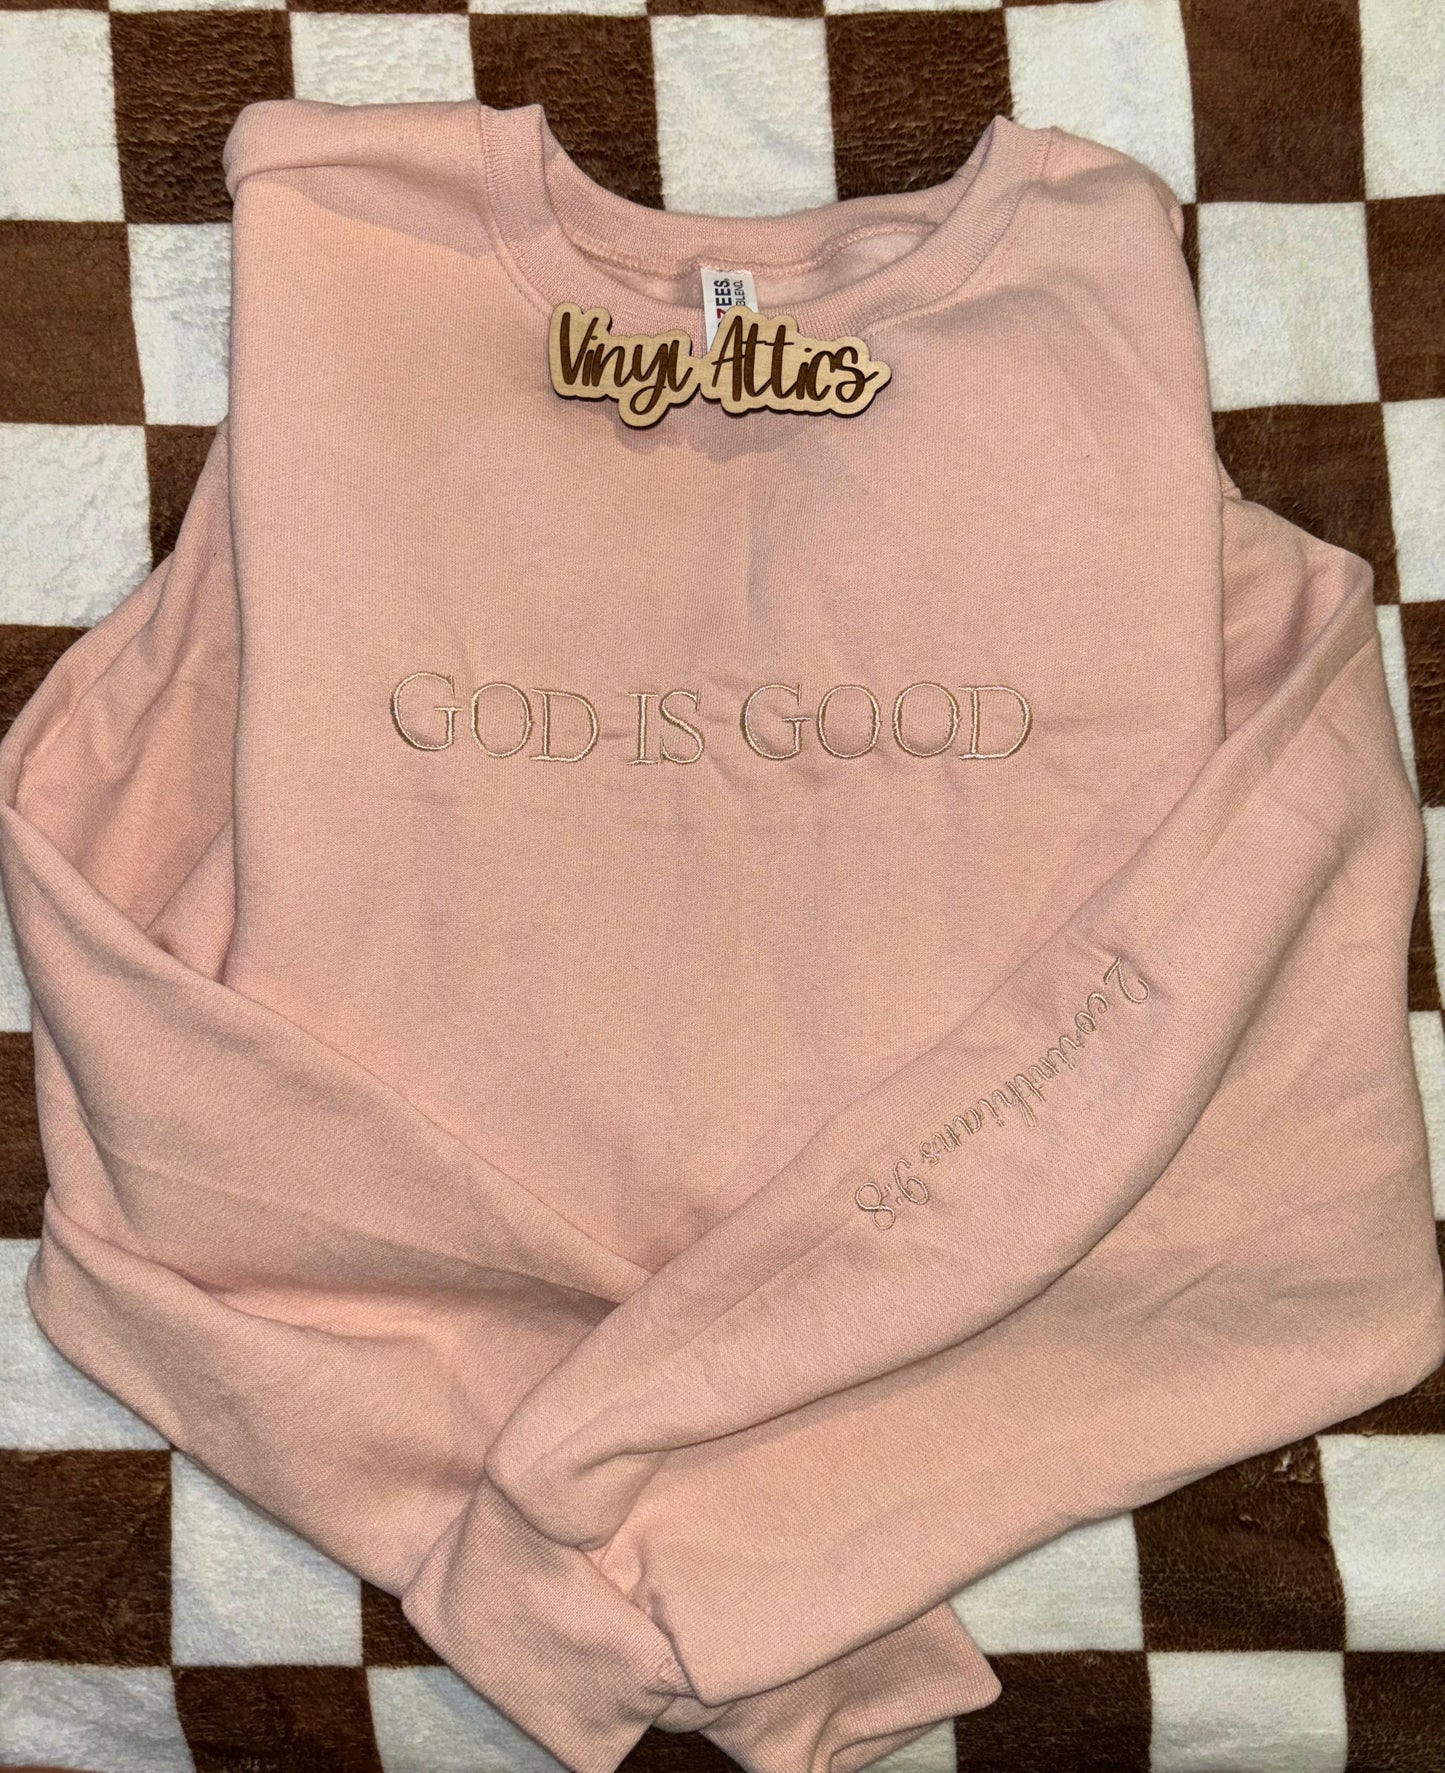 God is Good embroidered sweatshirt